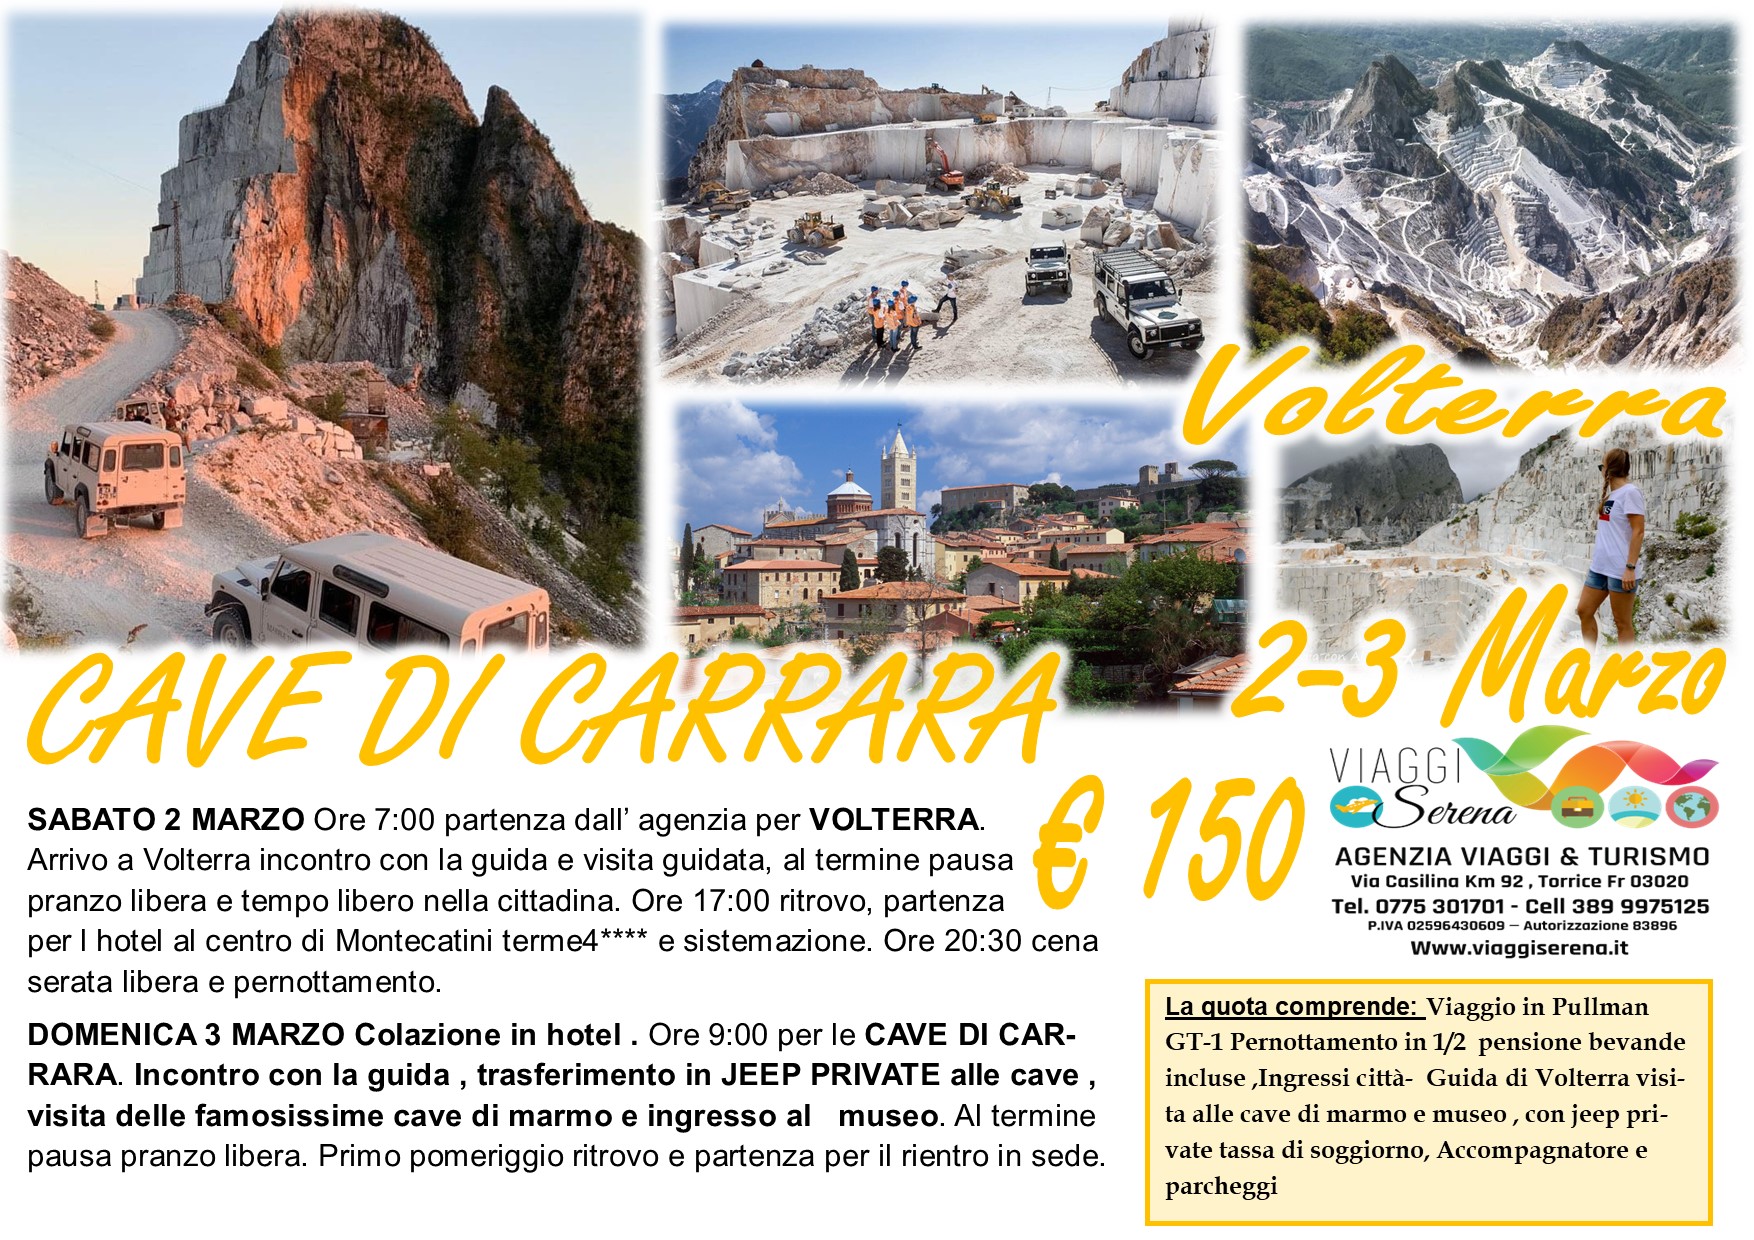 Viaggi di gruppo: Cave di Carrara & Volterra 2-3 Marzo € 150